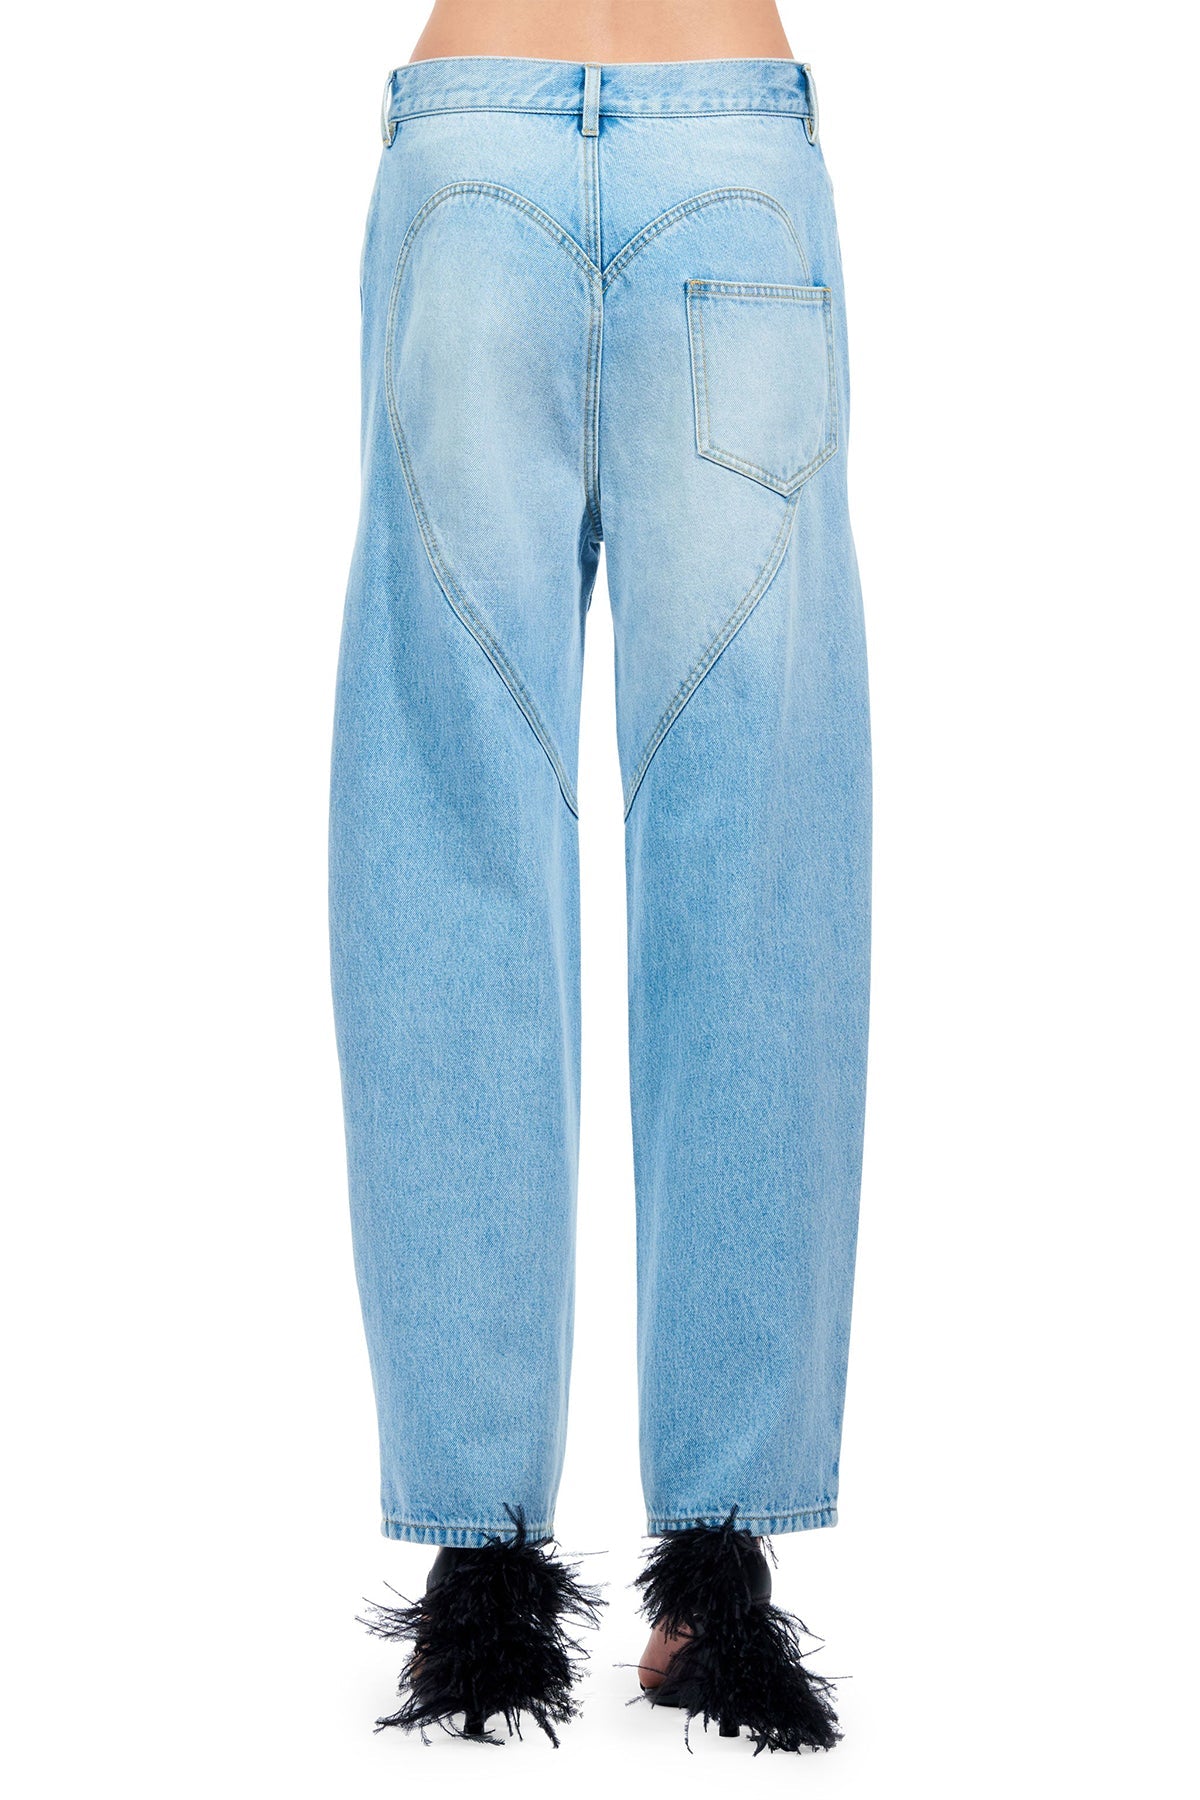 Crystal Slit Jean in Light Blue - shop-olivia.com